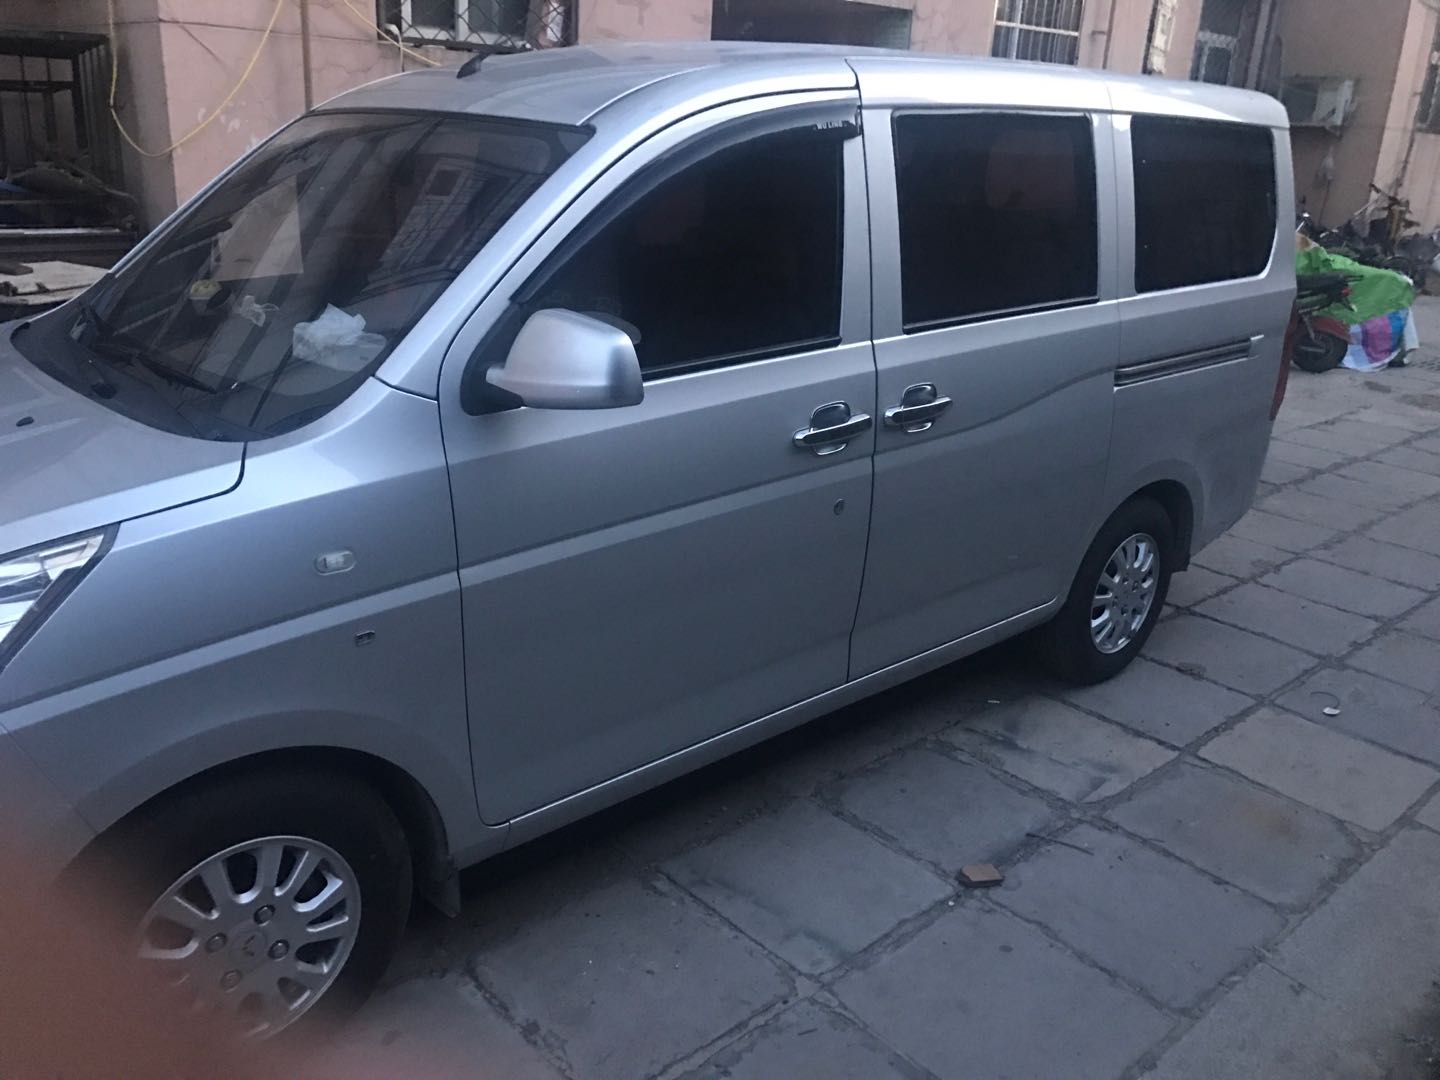 北京海淀区汽车租赁公司大巴出租中巴包车面包车租车